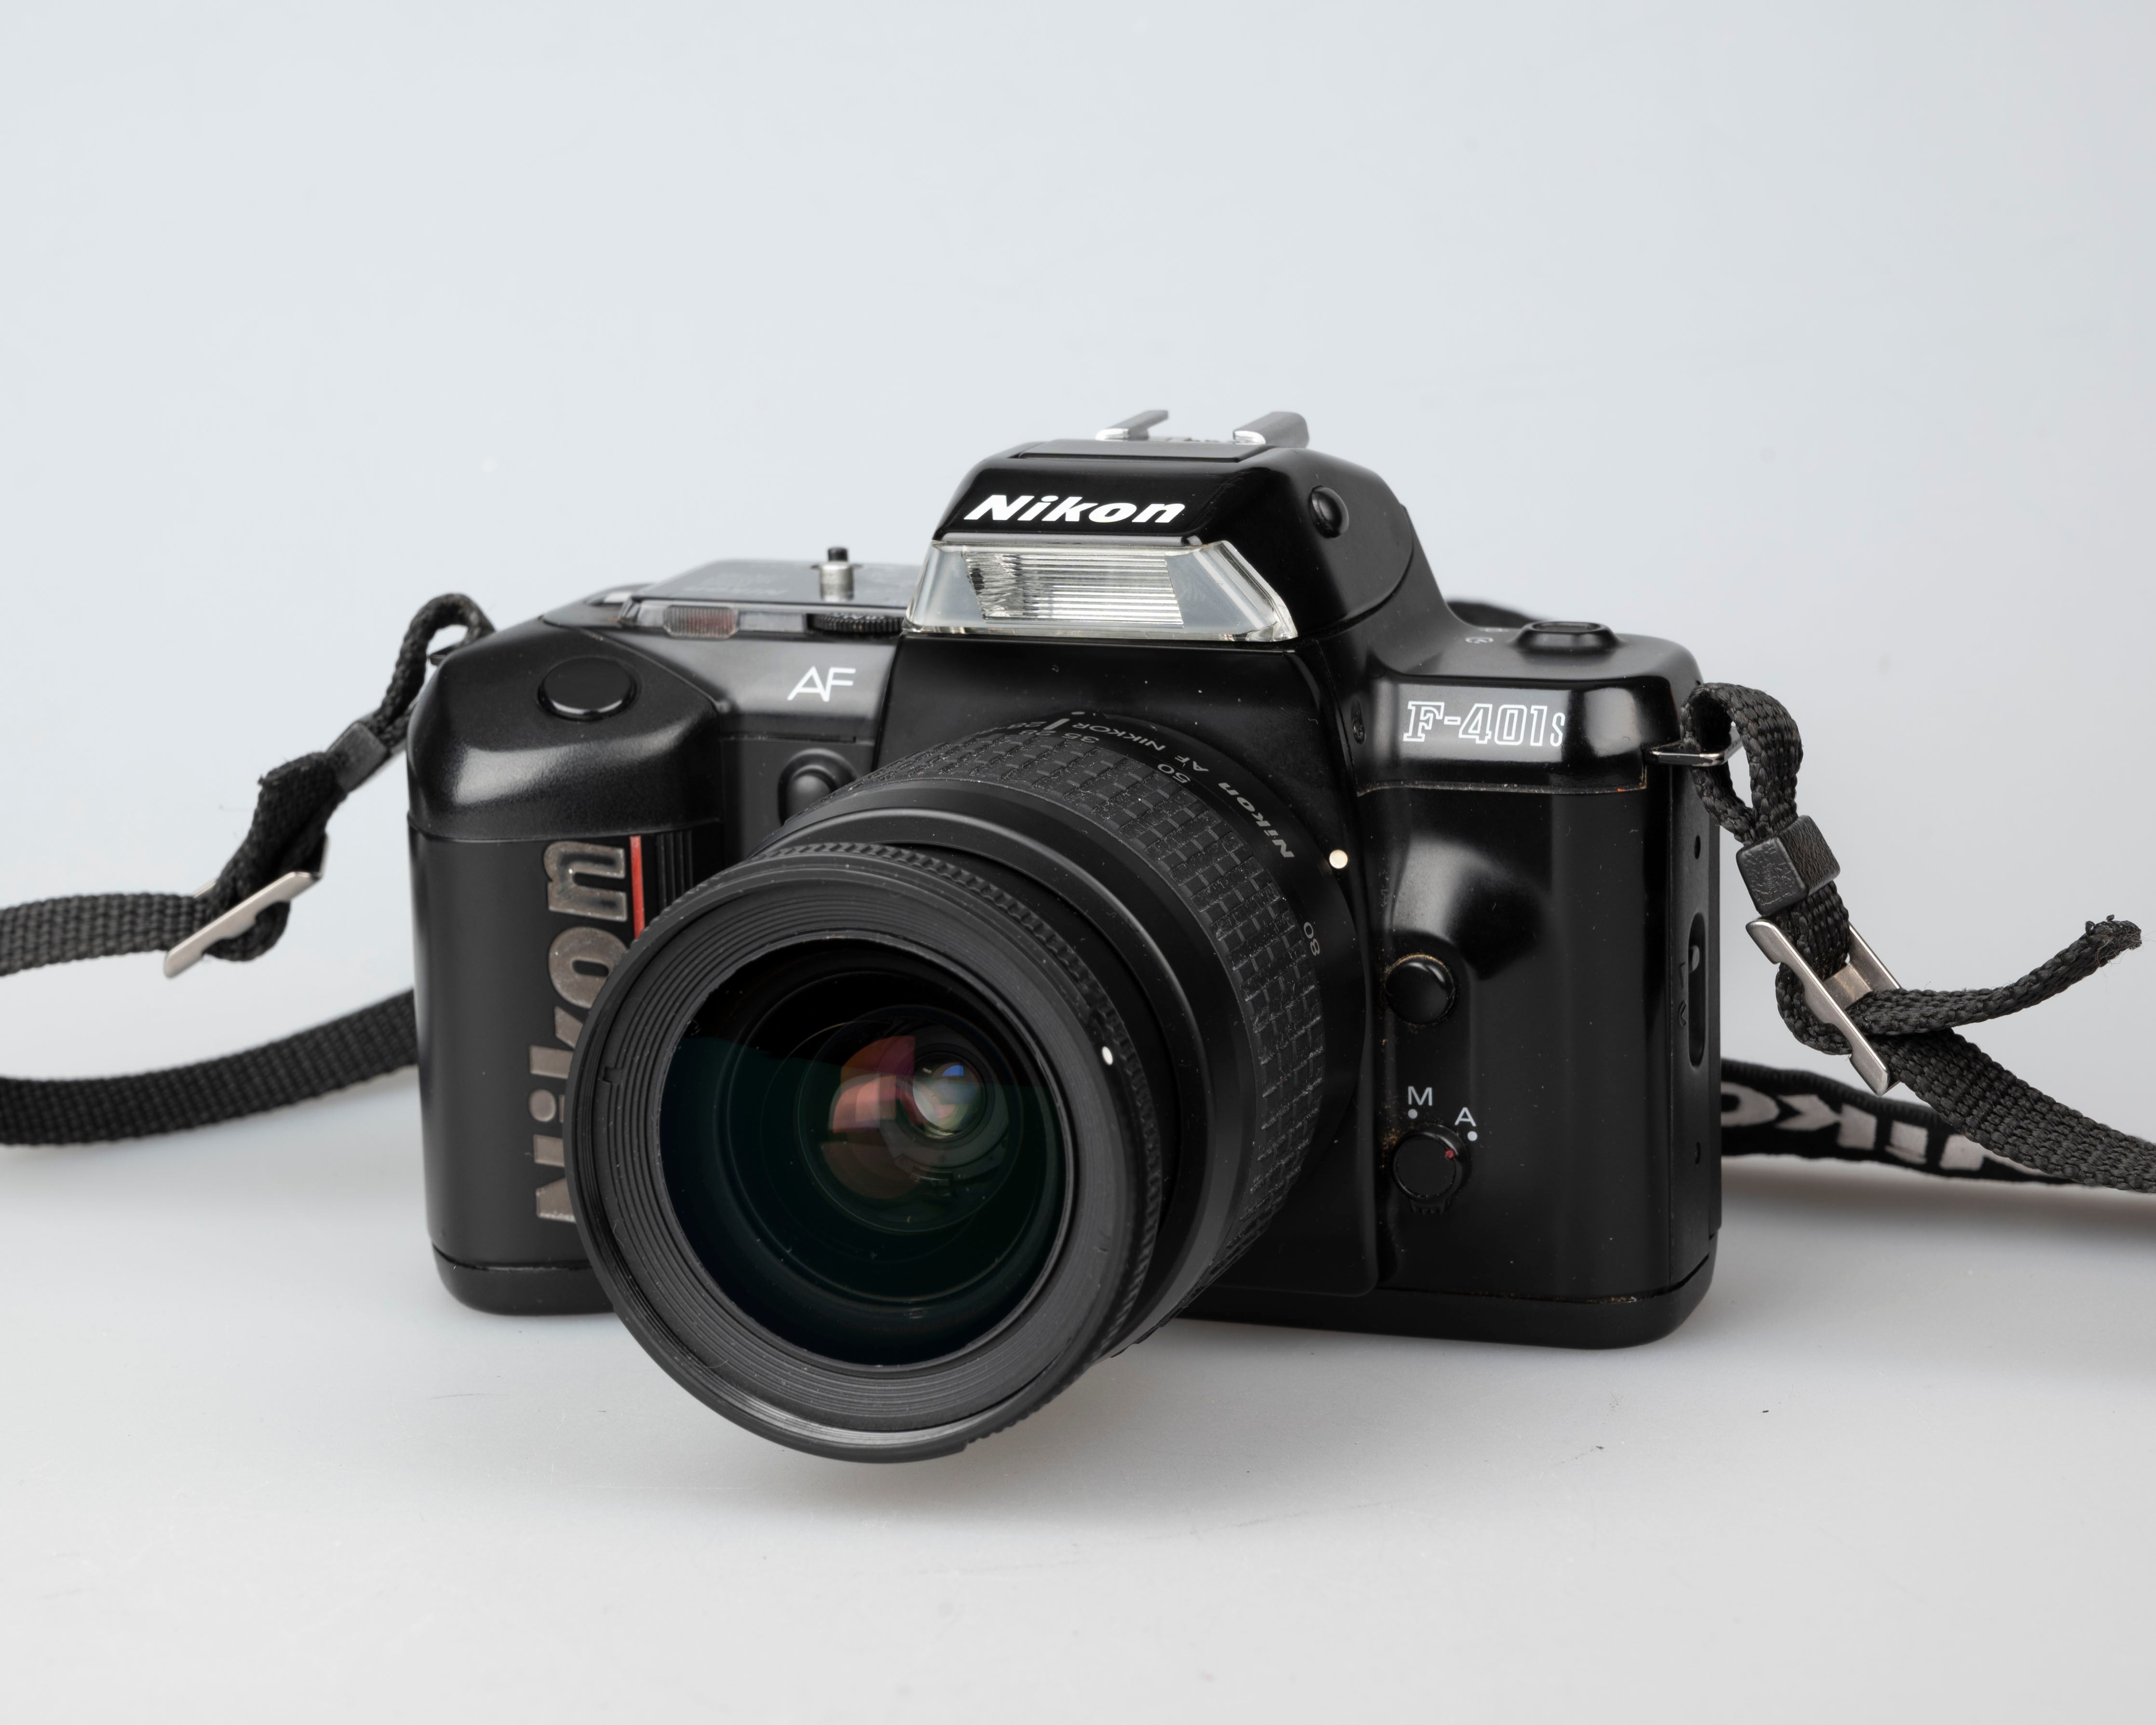 Nikon F-401S 35mm film SLR w/ AF Nikkor 28-80mm lens – New Wave Pool